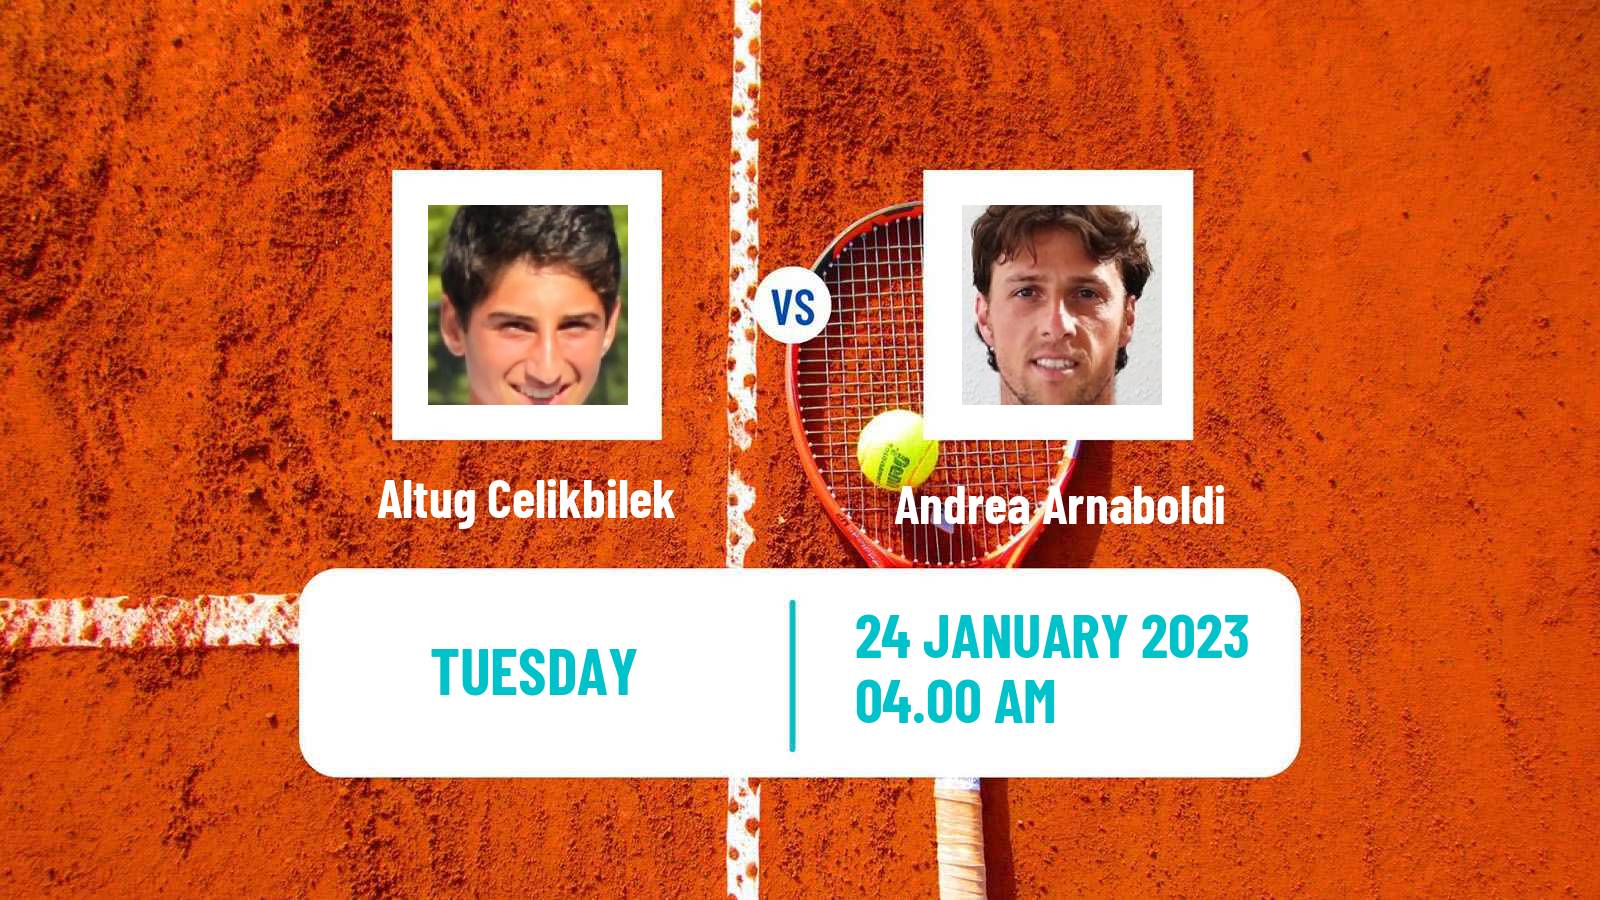 Tennis ATP Challenger Altug Celikbilek - Andrea Arnaboldi